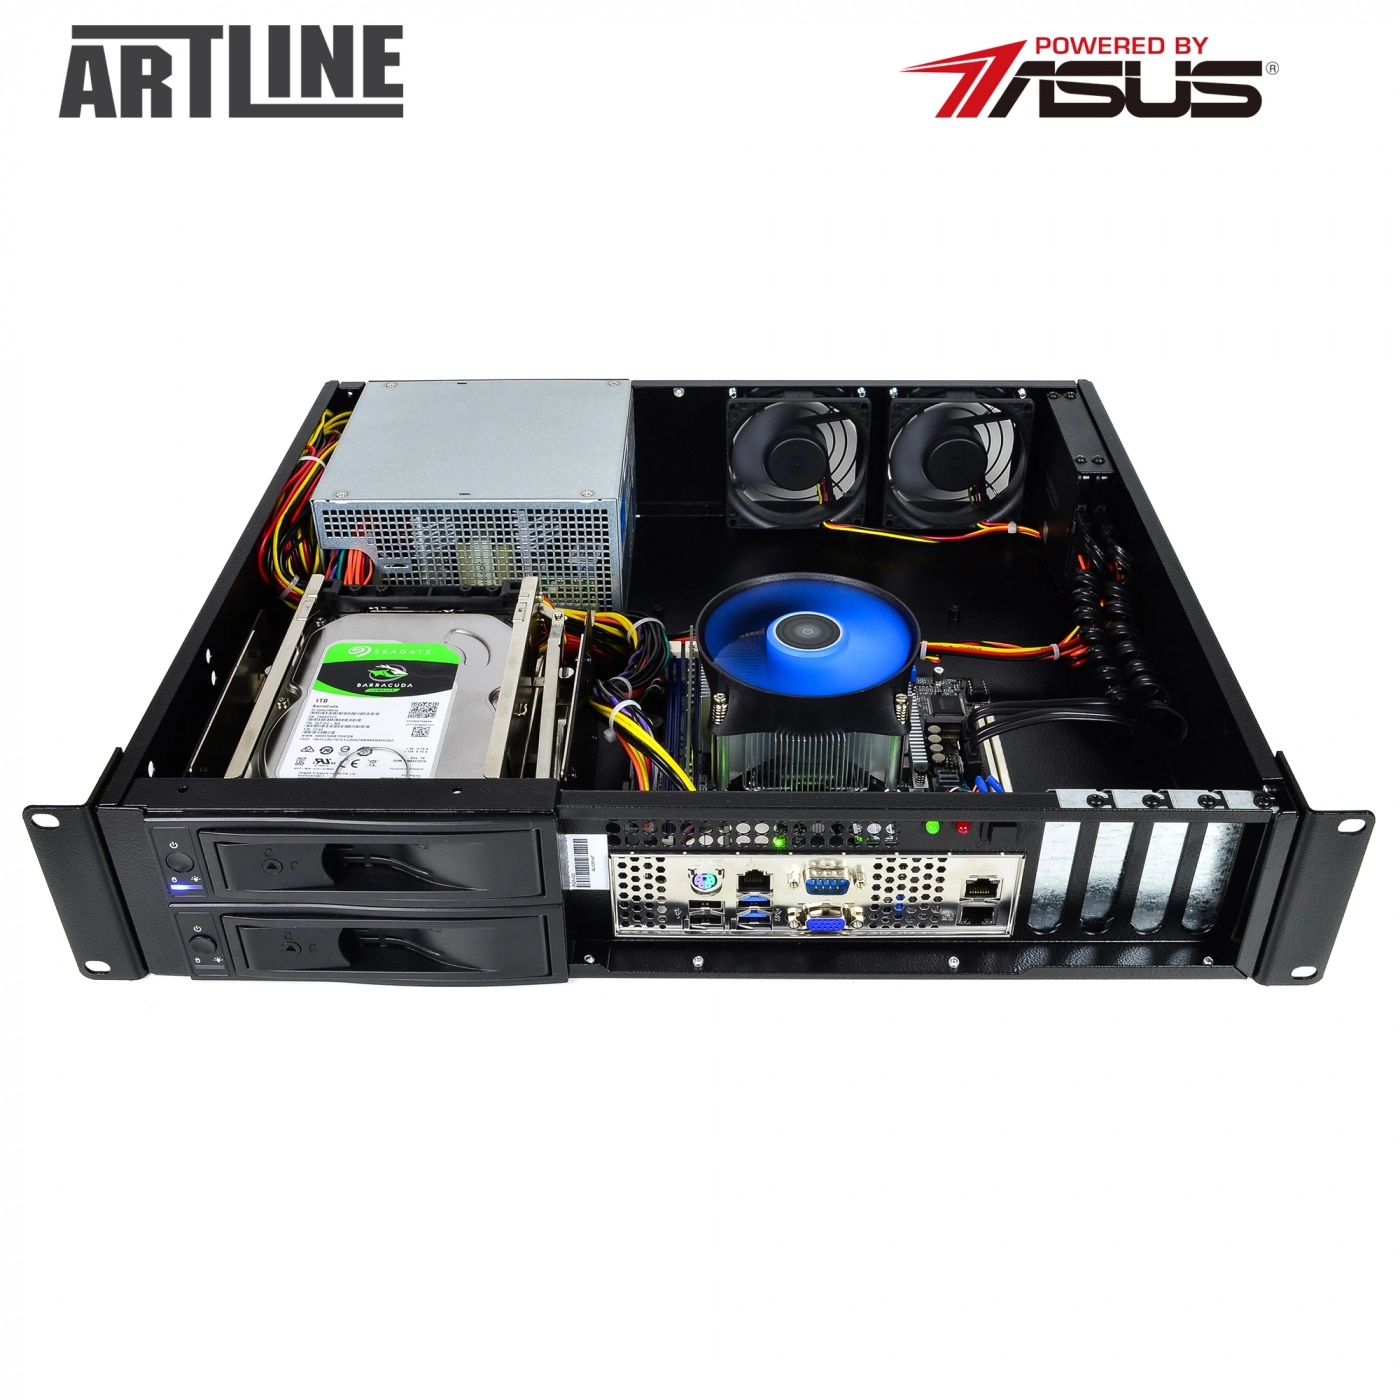 Купить Сервер ARTLINE Business R25v06 - фото 10